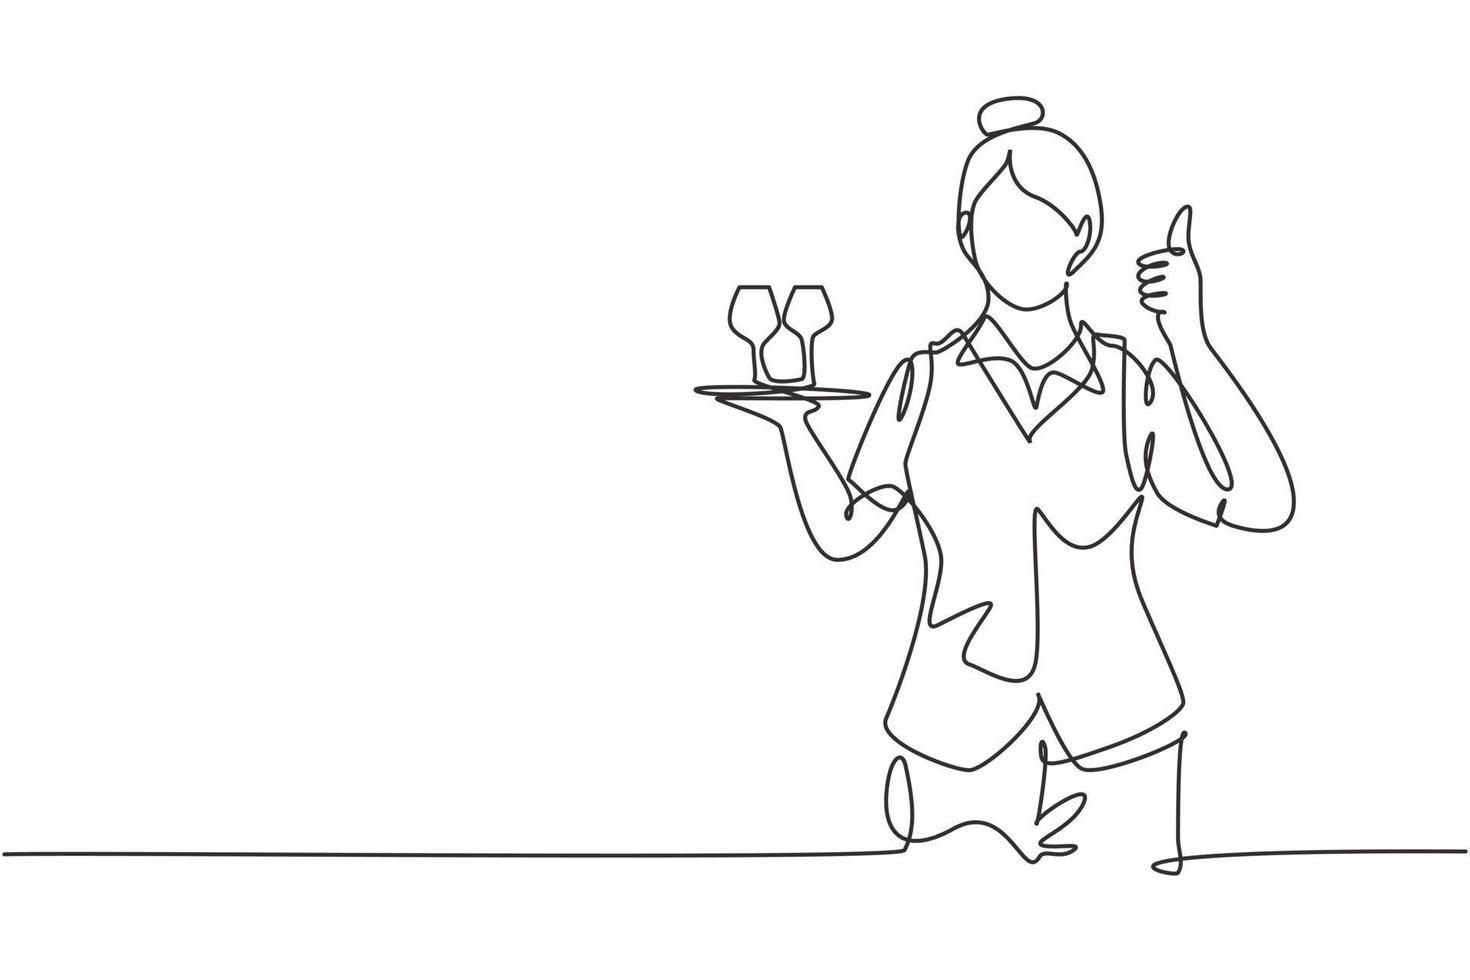 dibujo de una sola línea de camarera con un gesto de pulgar hacia arriba y trajo una bandeja de vasos para beber que sirve a los visitantes en la cafetería. Ilustración de vector gráfico de diseño de dibujo de línea continua moderna